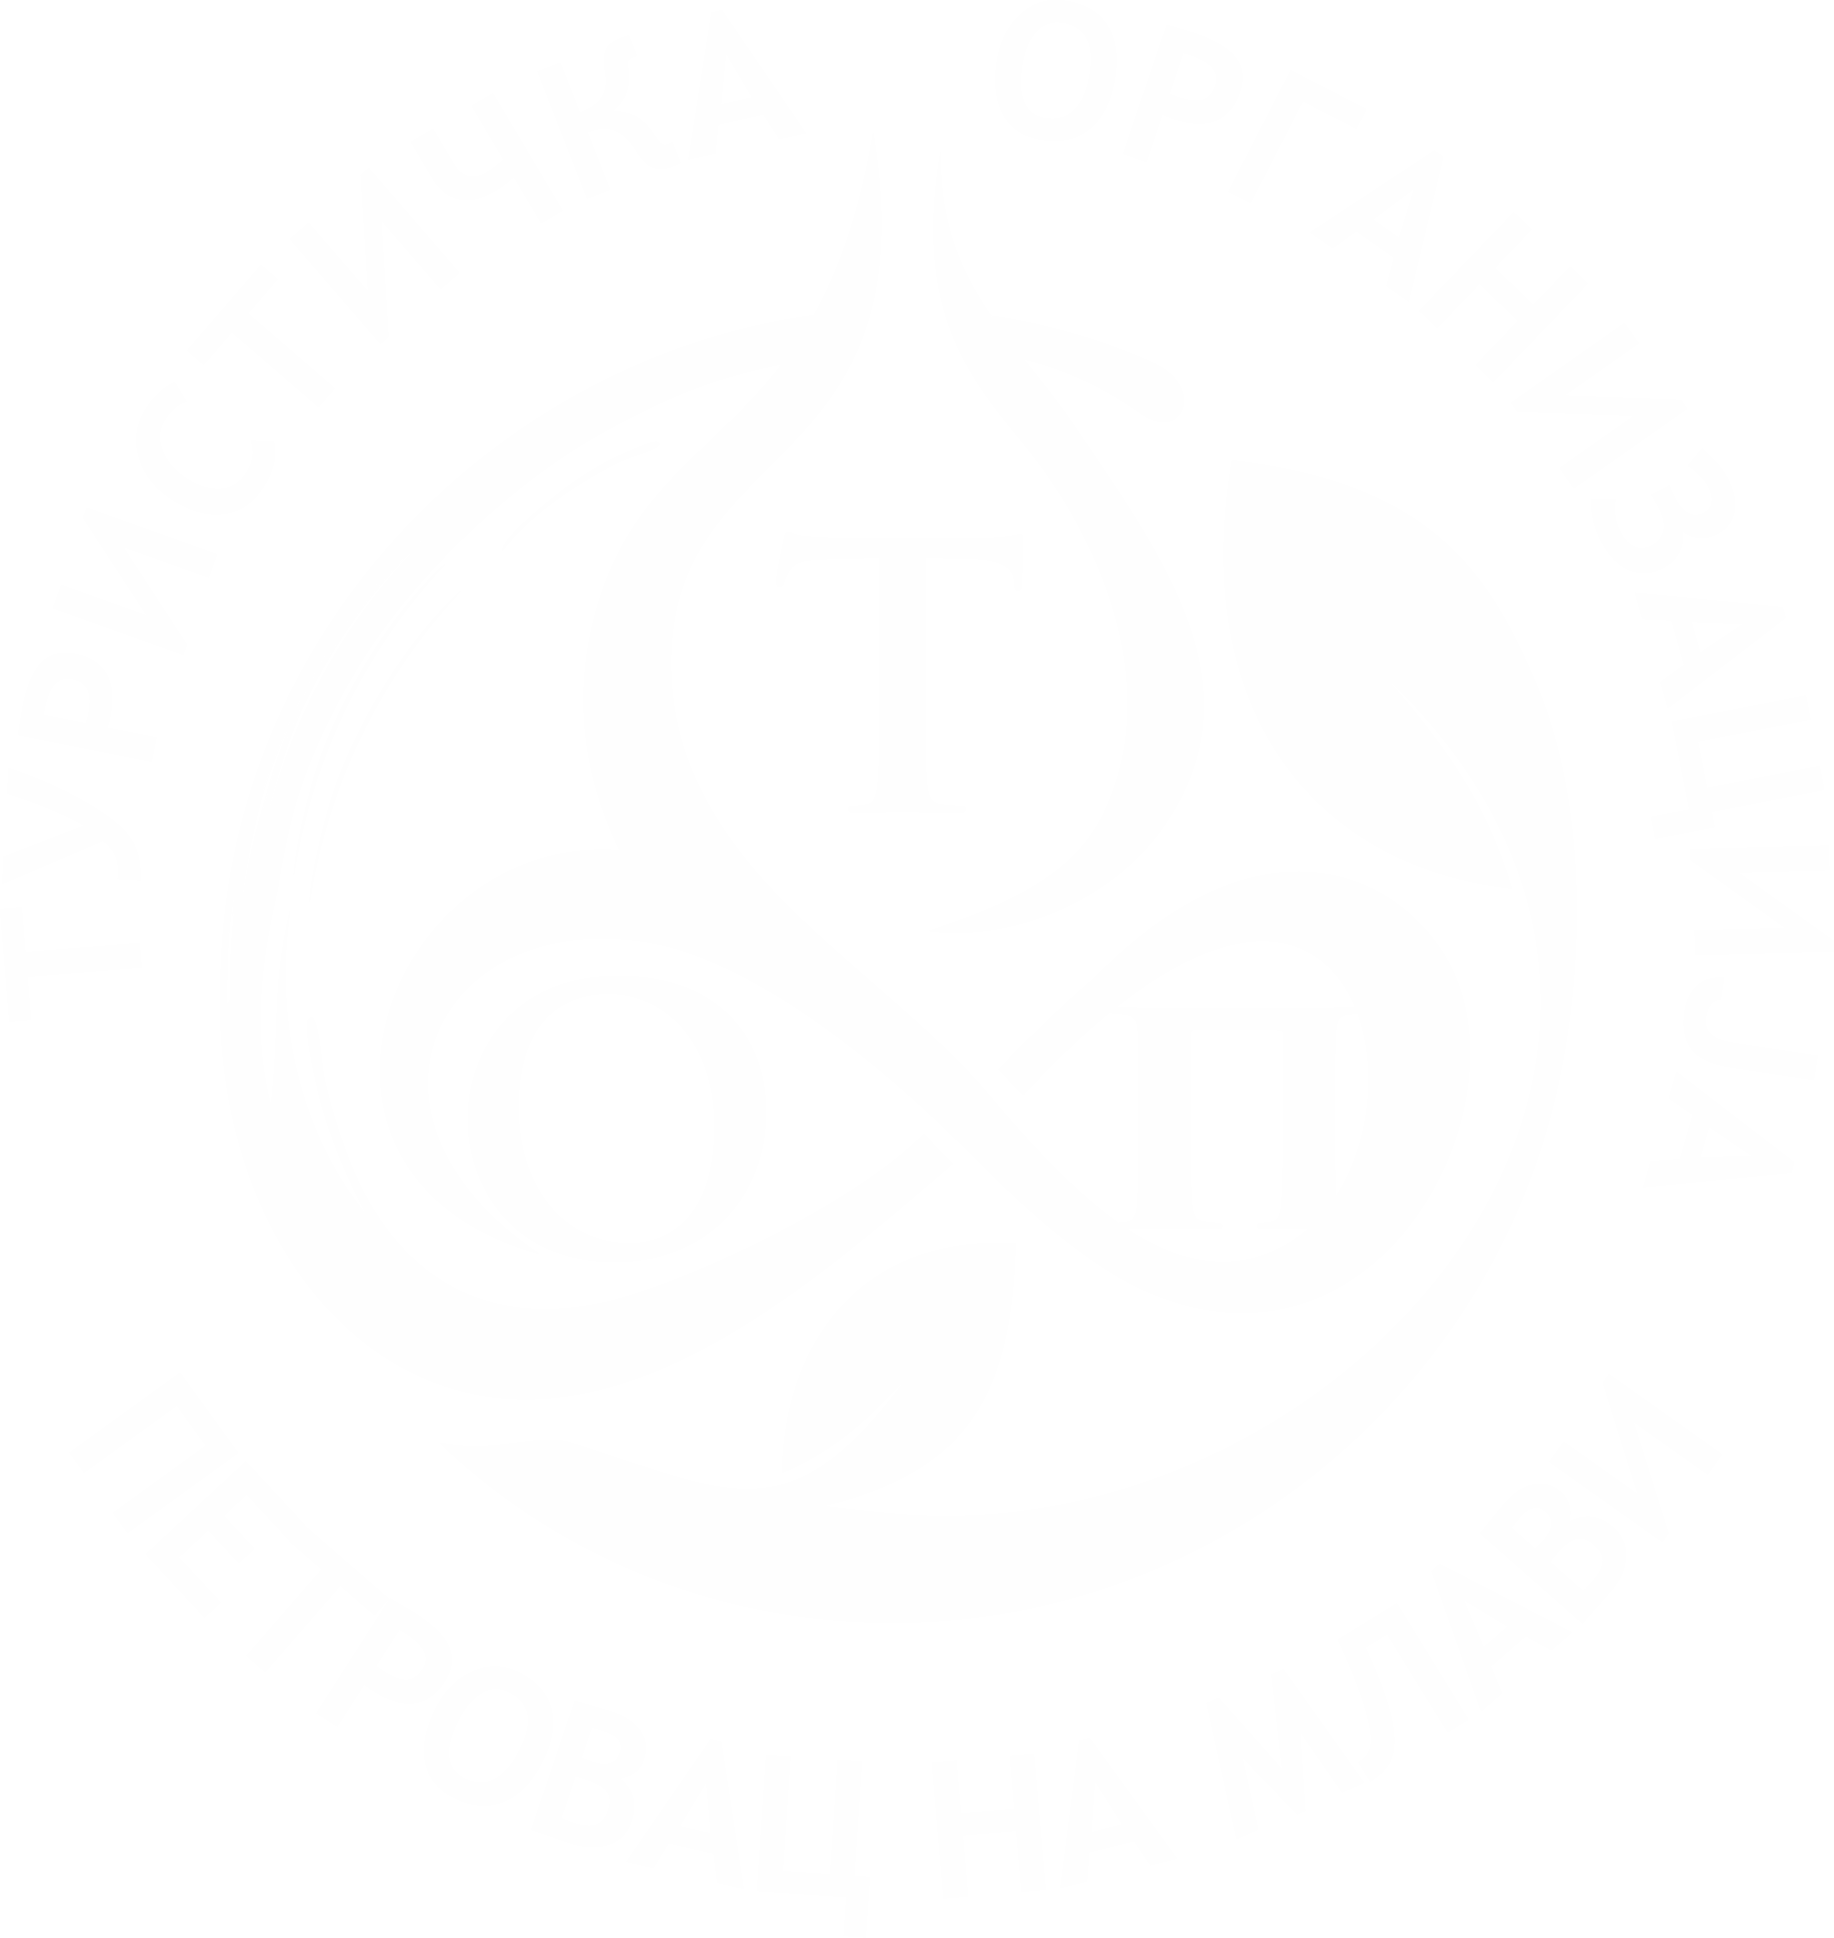 Turistička organizacija Petrovac